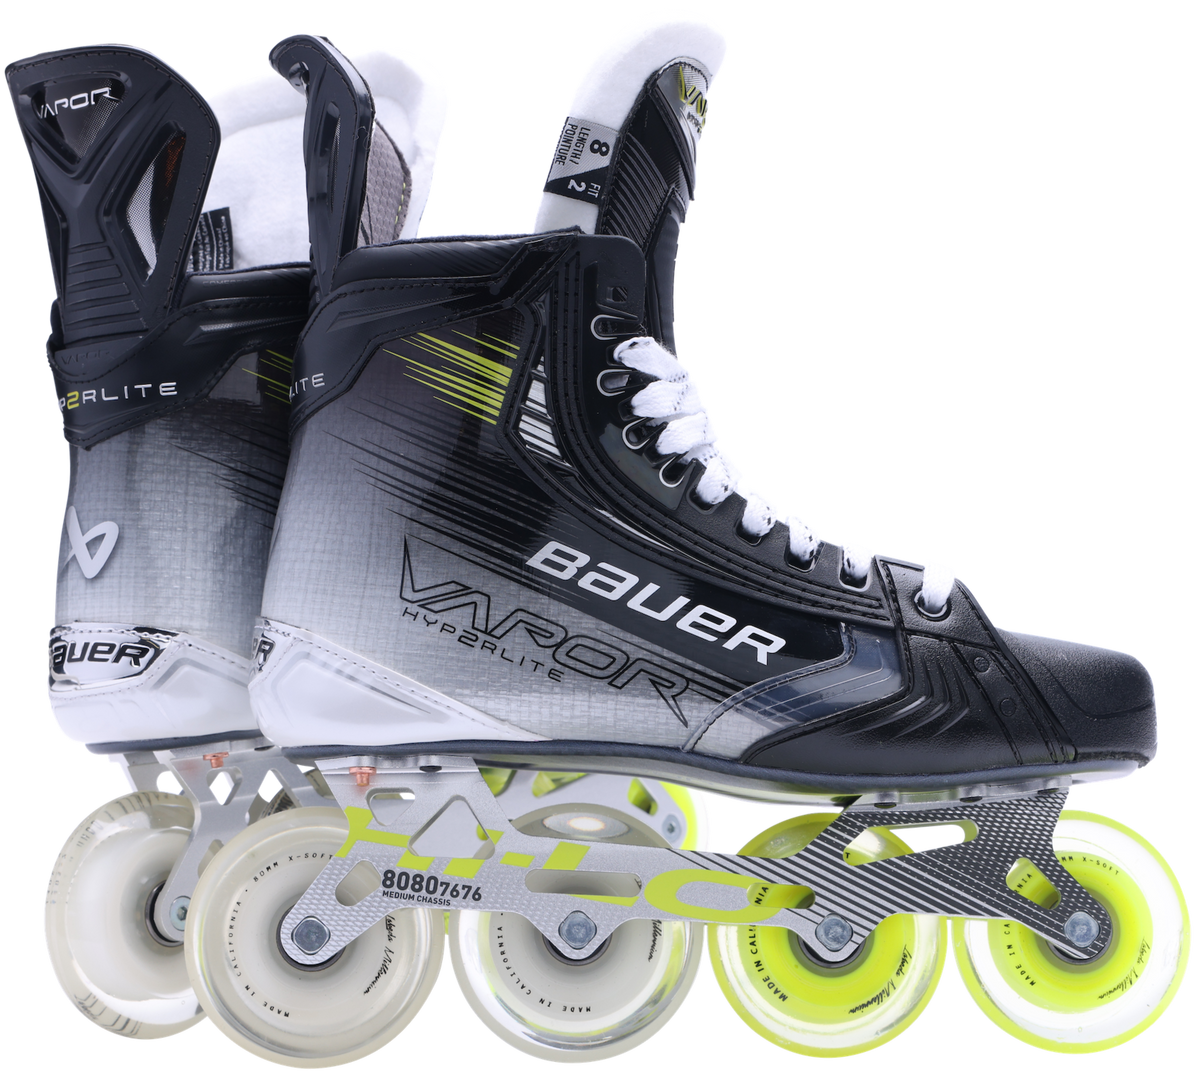 Bauer Vapor Hyperlite2 Senior Roller Skates